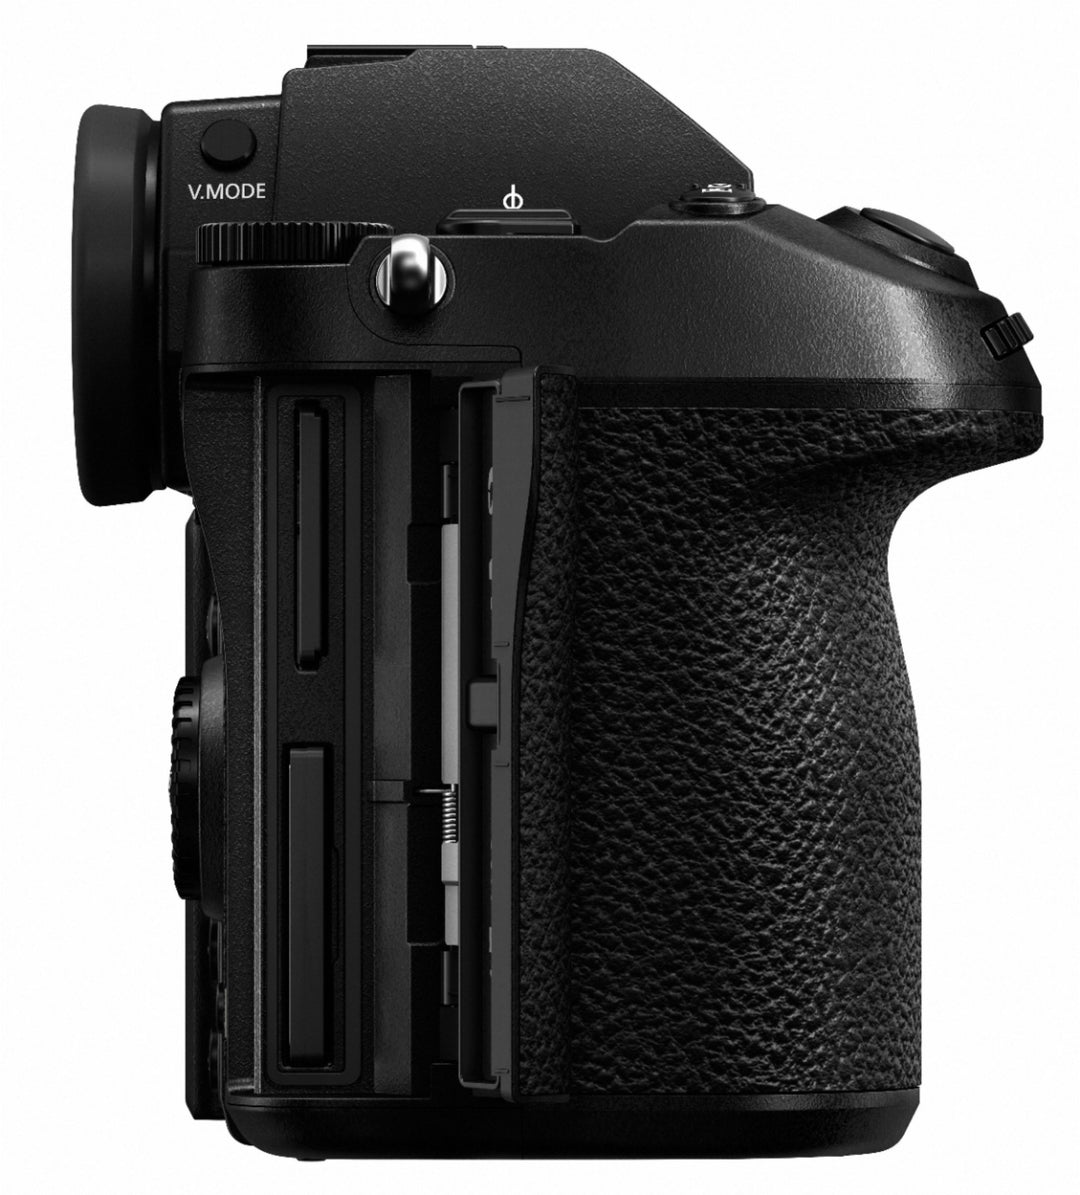 Panasonic - LUMIX S1R Mirrorless Camera (Body Only) - Black_4